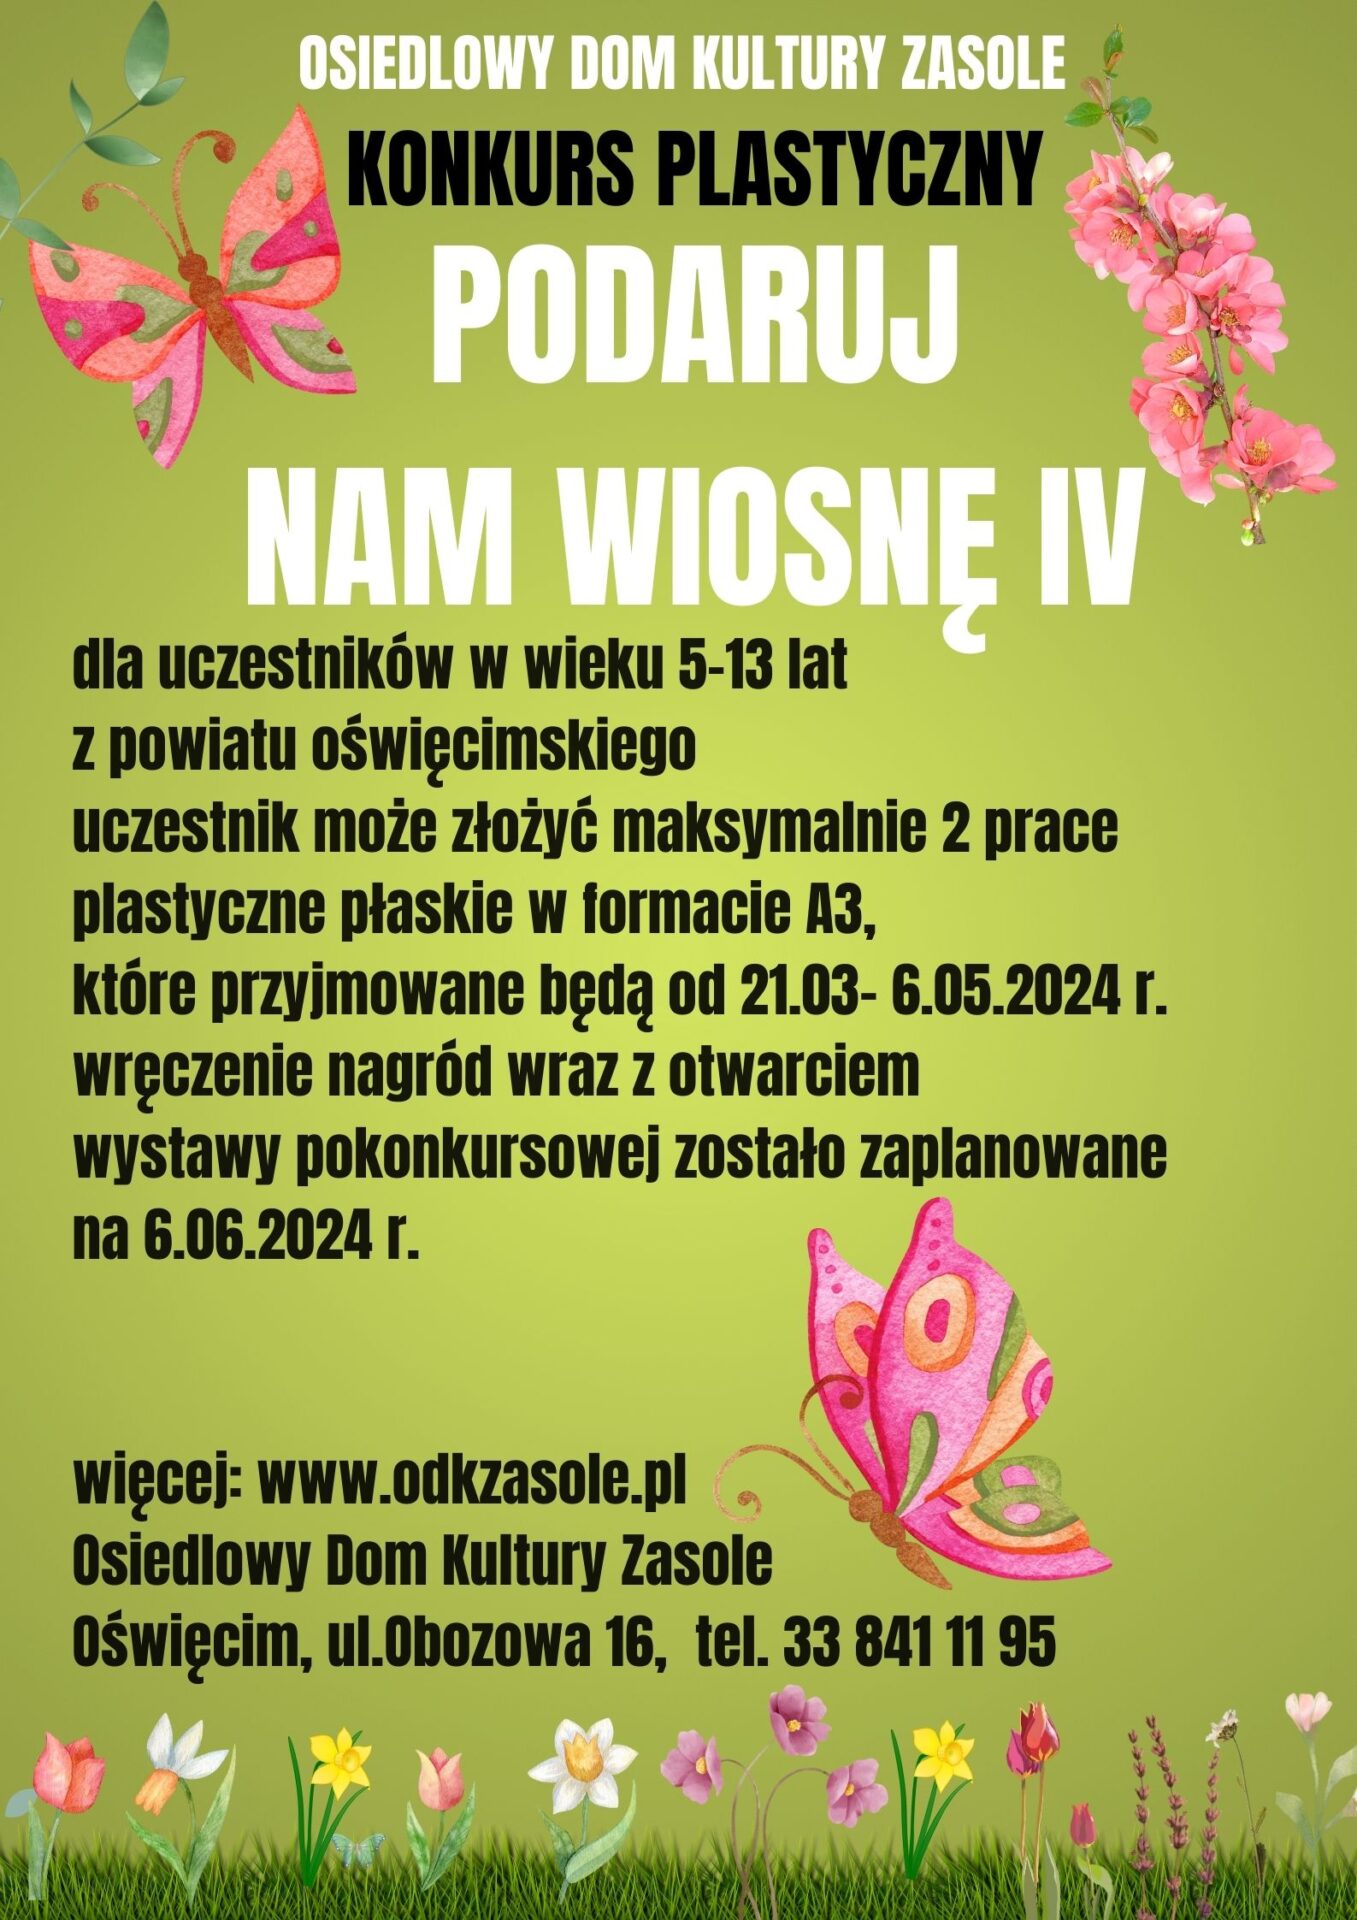 Wiosenny plakat w przewadze zieleni, z motylami z informacjami o konkursie plastycznym.